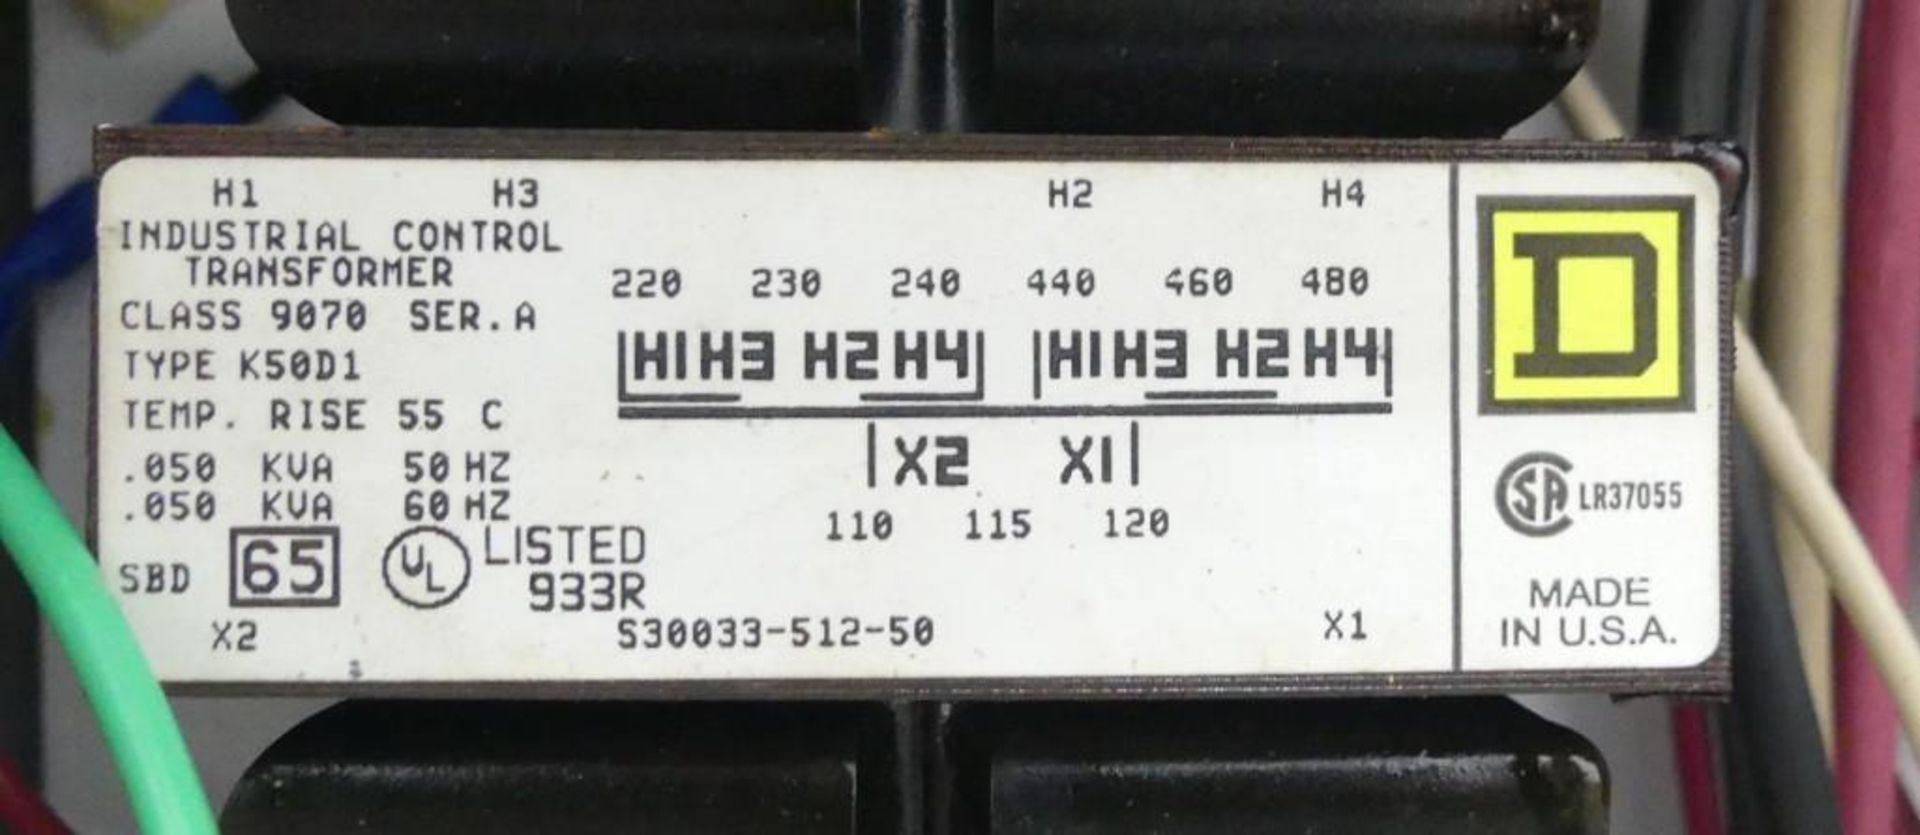 Goring Kerr Tektamet 211 9.75" H by 4.5" W Metal Detector - Image 17 of 24